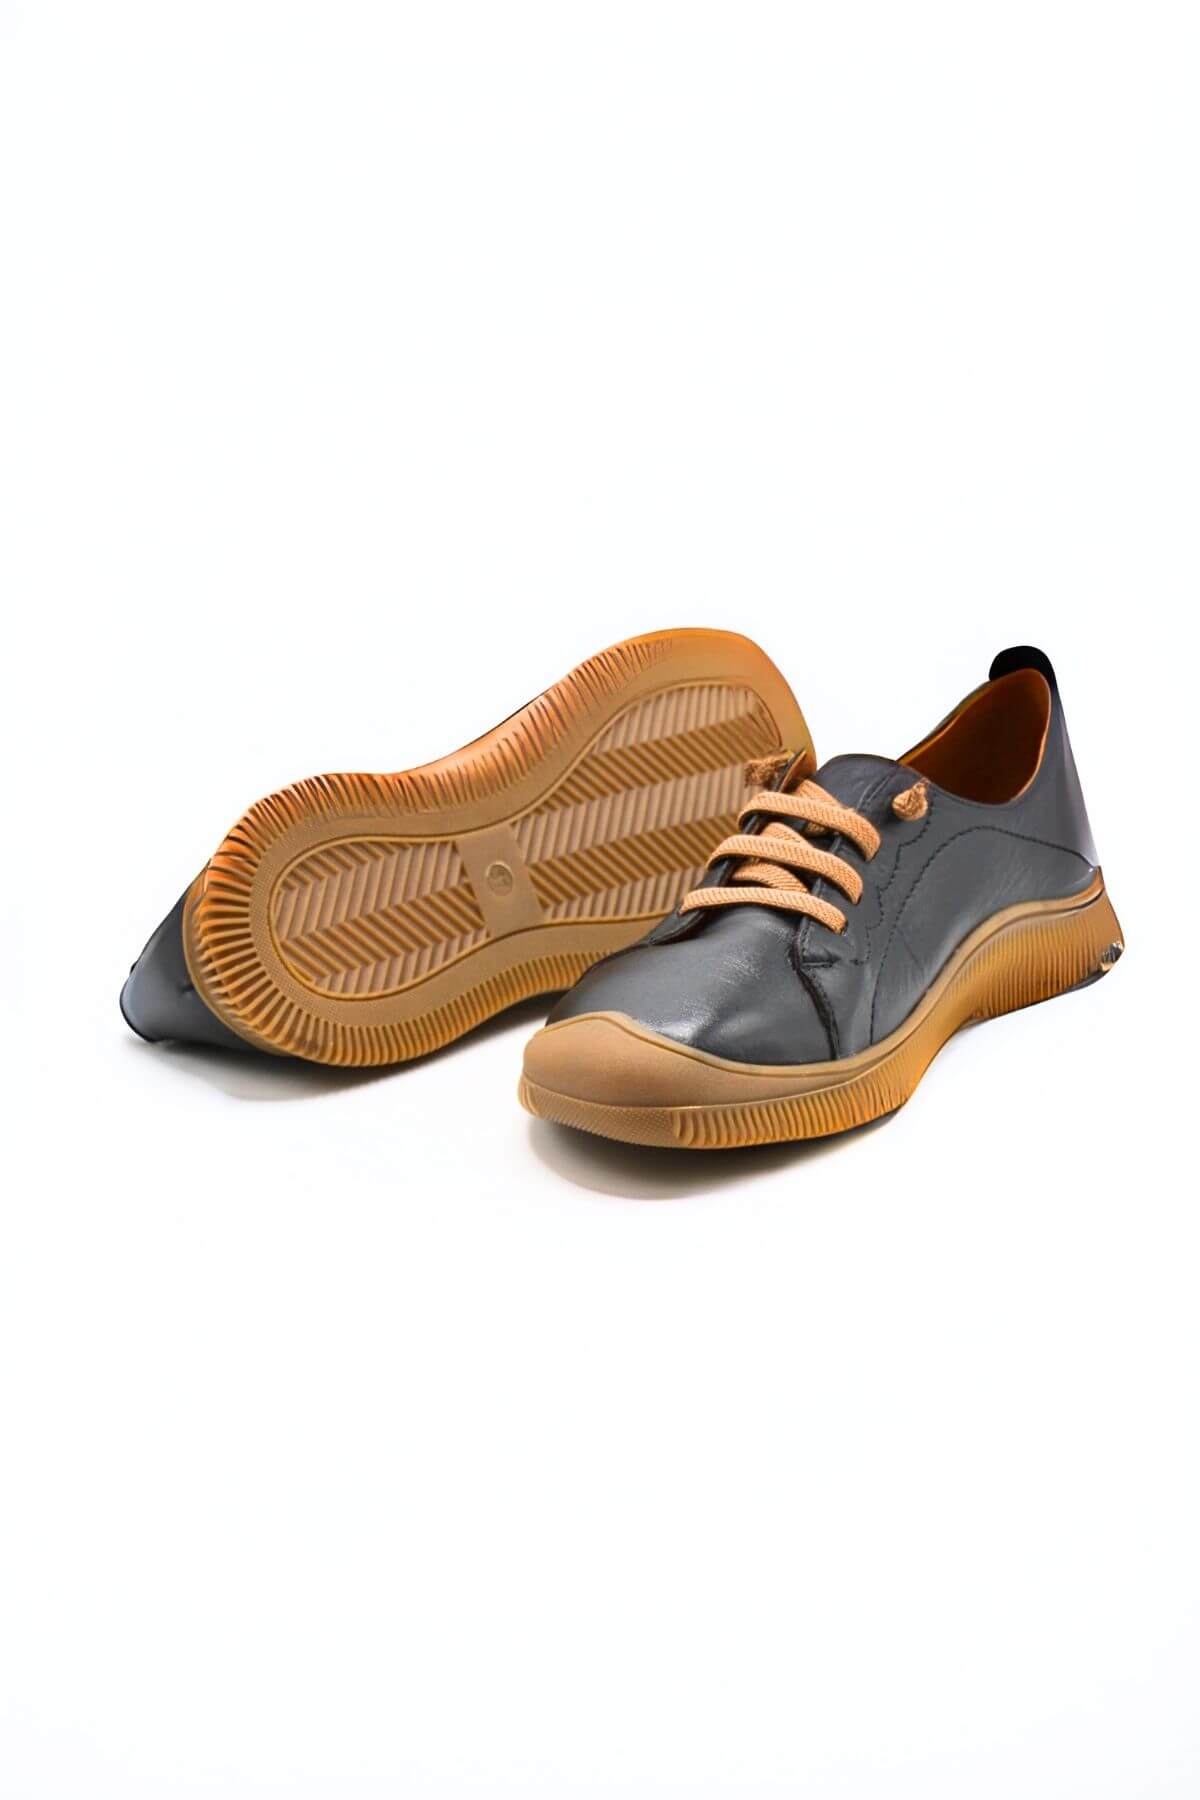 Kadın Comfort Deri Ayakkabı Siyah 2413504Y - Thumbnail